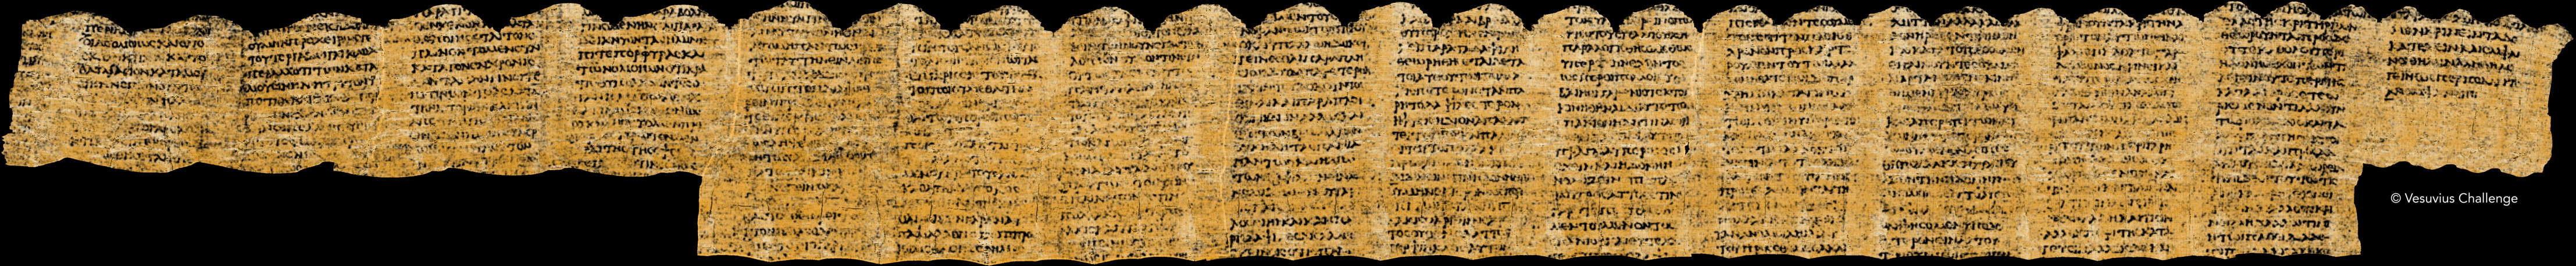 Il papiro "srotolato" virtualmente